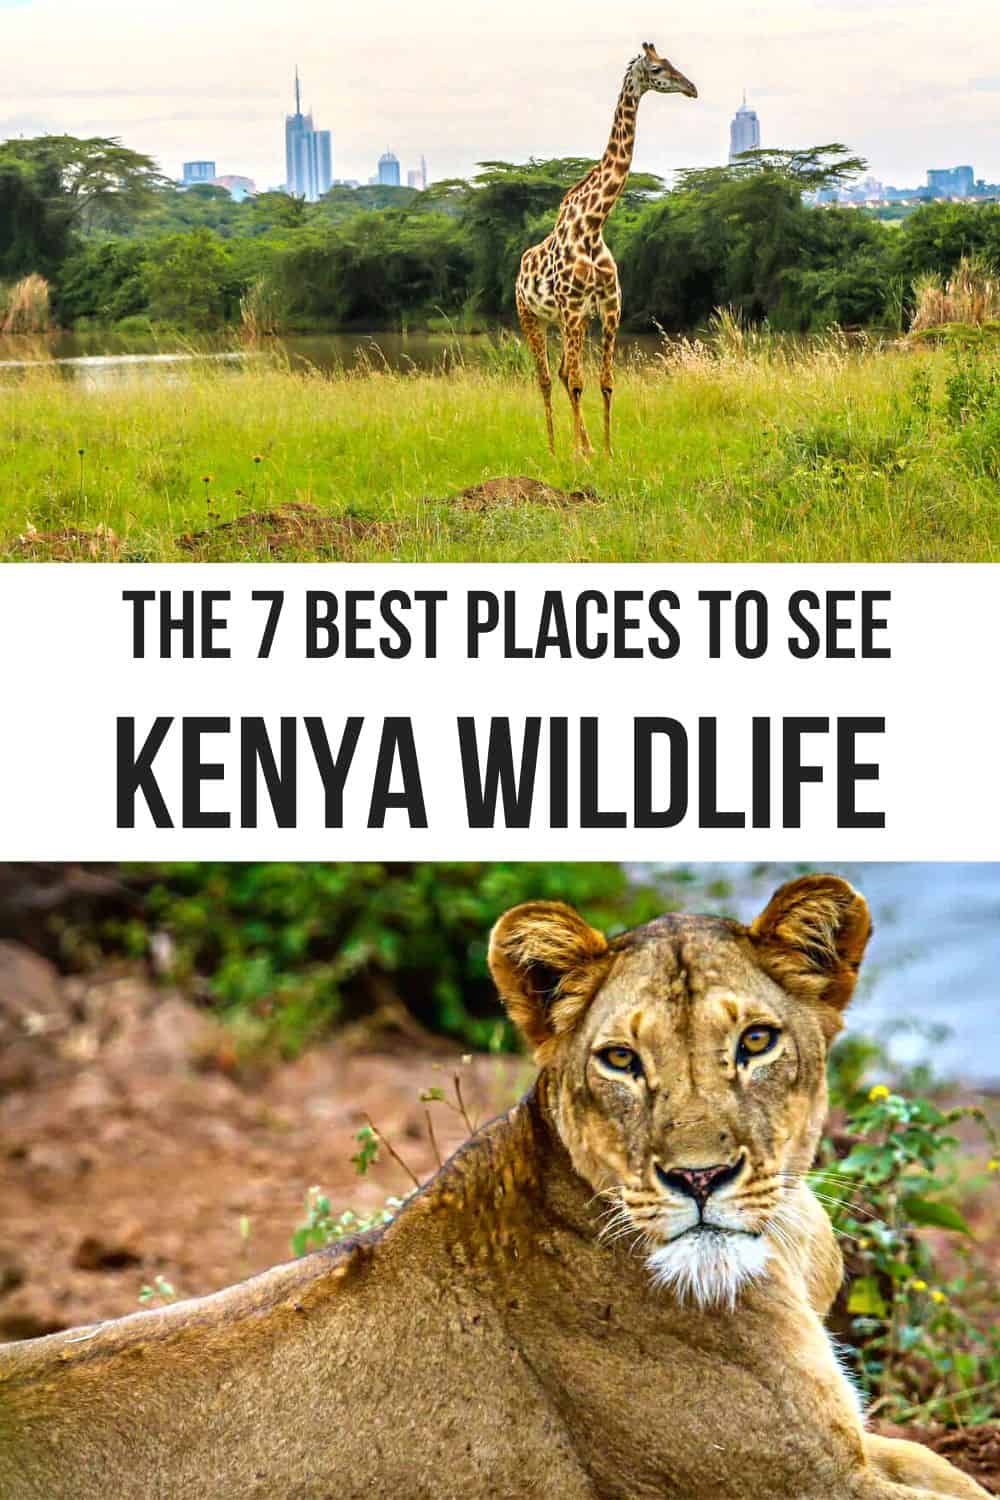 Les 7 meilleurs parcs de safari et réserves de chasse au Kenya, d'Amboseli et du Maasai Mara à Ol Pejeto et Tsavo.  |  parcs nationaux du kenya |  réserves de gibier au kenya |  parcs au kenya |  réserve nationale au kenya |  parcs safari kenya |  parcs safari au kenya |  réserves nationales du kenya |  parcs kényans |  parc national au kenya |  réserves nationales au kenya |  parcs à gibier au kenya |  parcs à gibier du kenya |  parcs nationaux du kenya